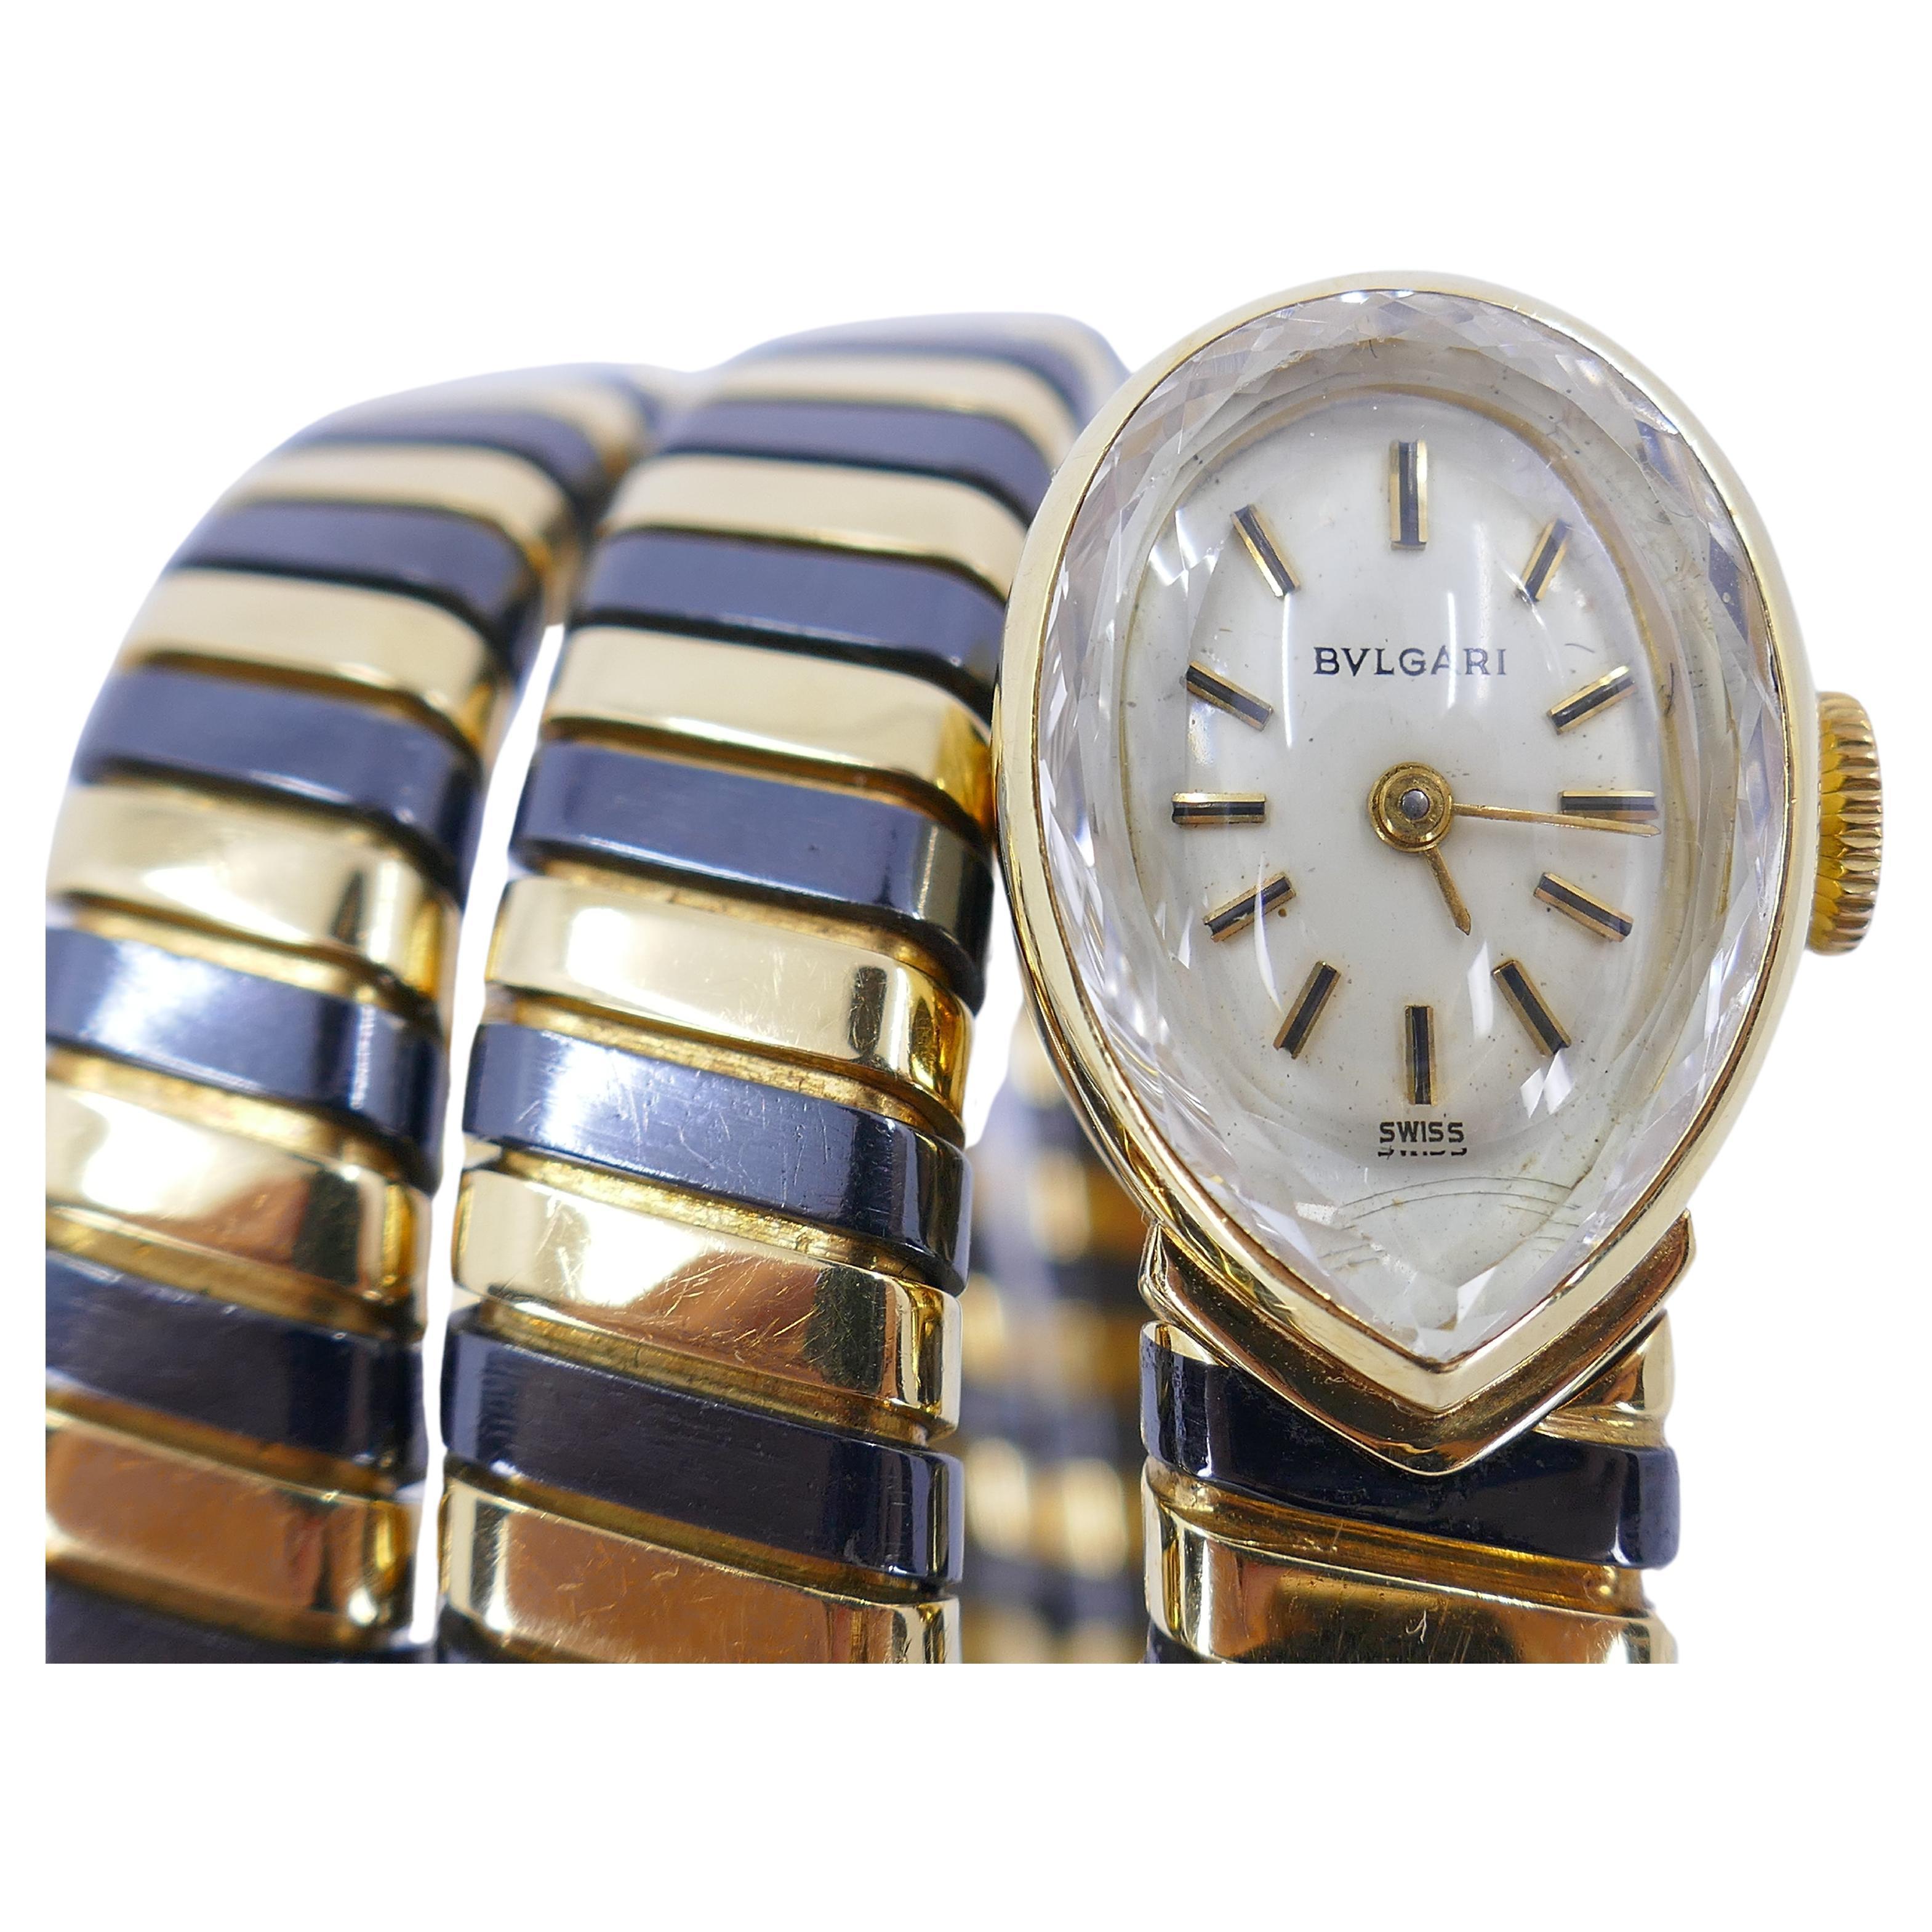 Une version rare de la montre emblématique Bulgari Tubogas fabriquée en  alterné d'or noirci et d'or jaune 18k. Le boîtier est en forme de poire, avec un cadran blanc, des bâtons en or et des index à barres en or décorés d'émail noir. 
La montre est